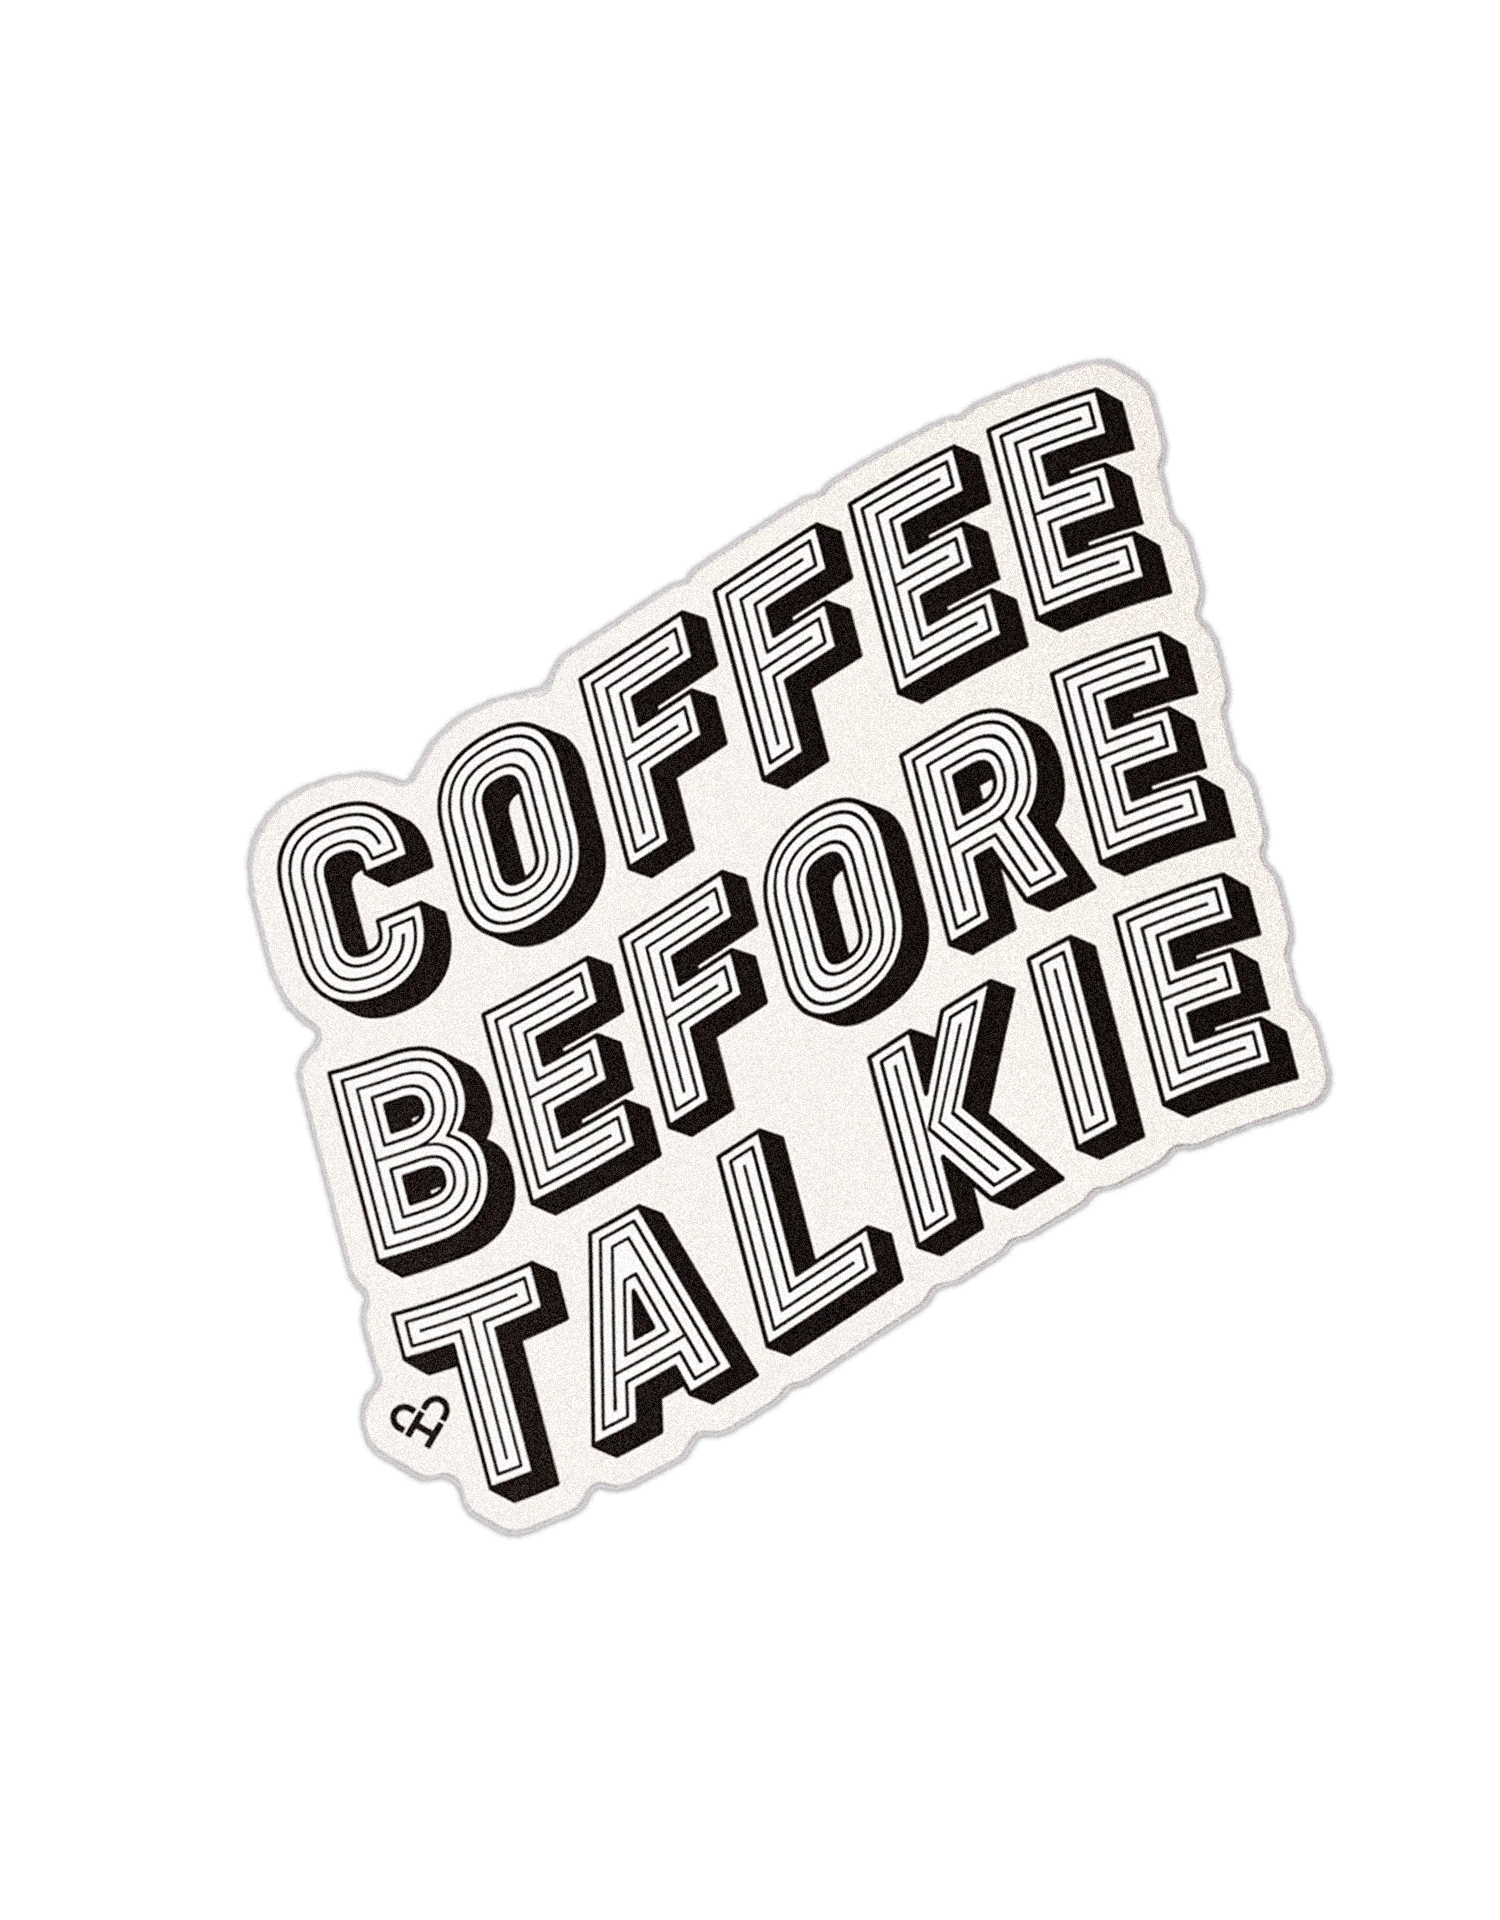 Coffee-talkie.png